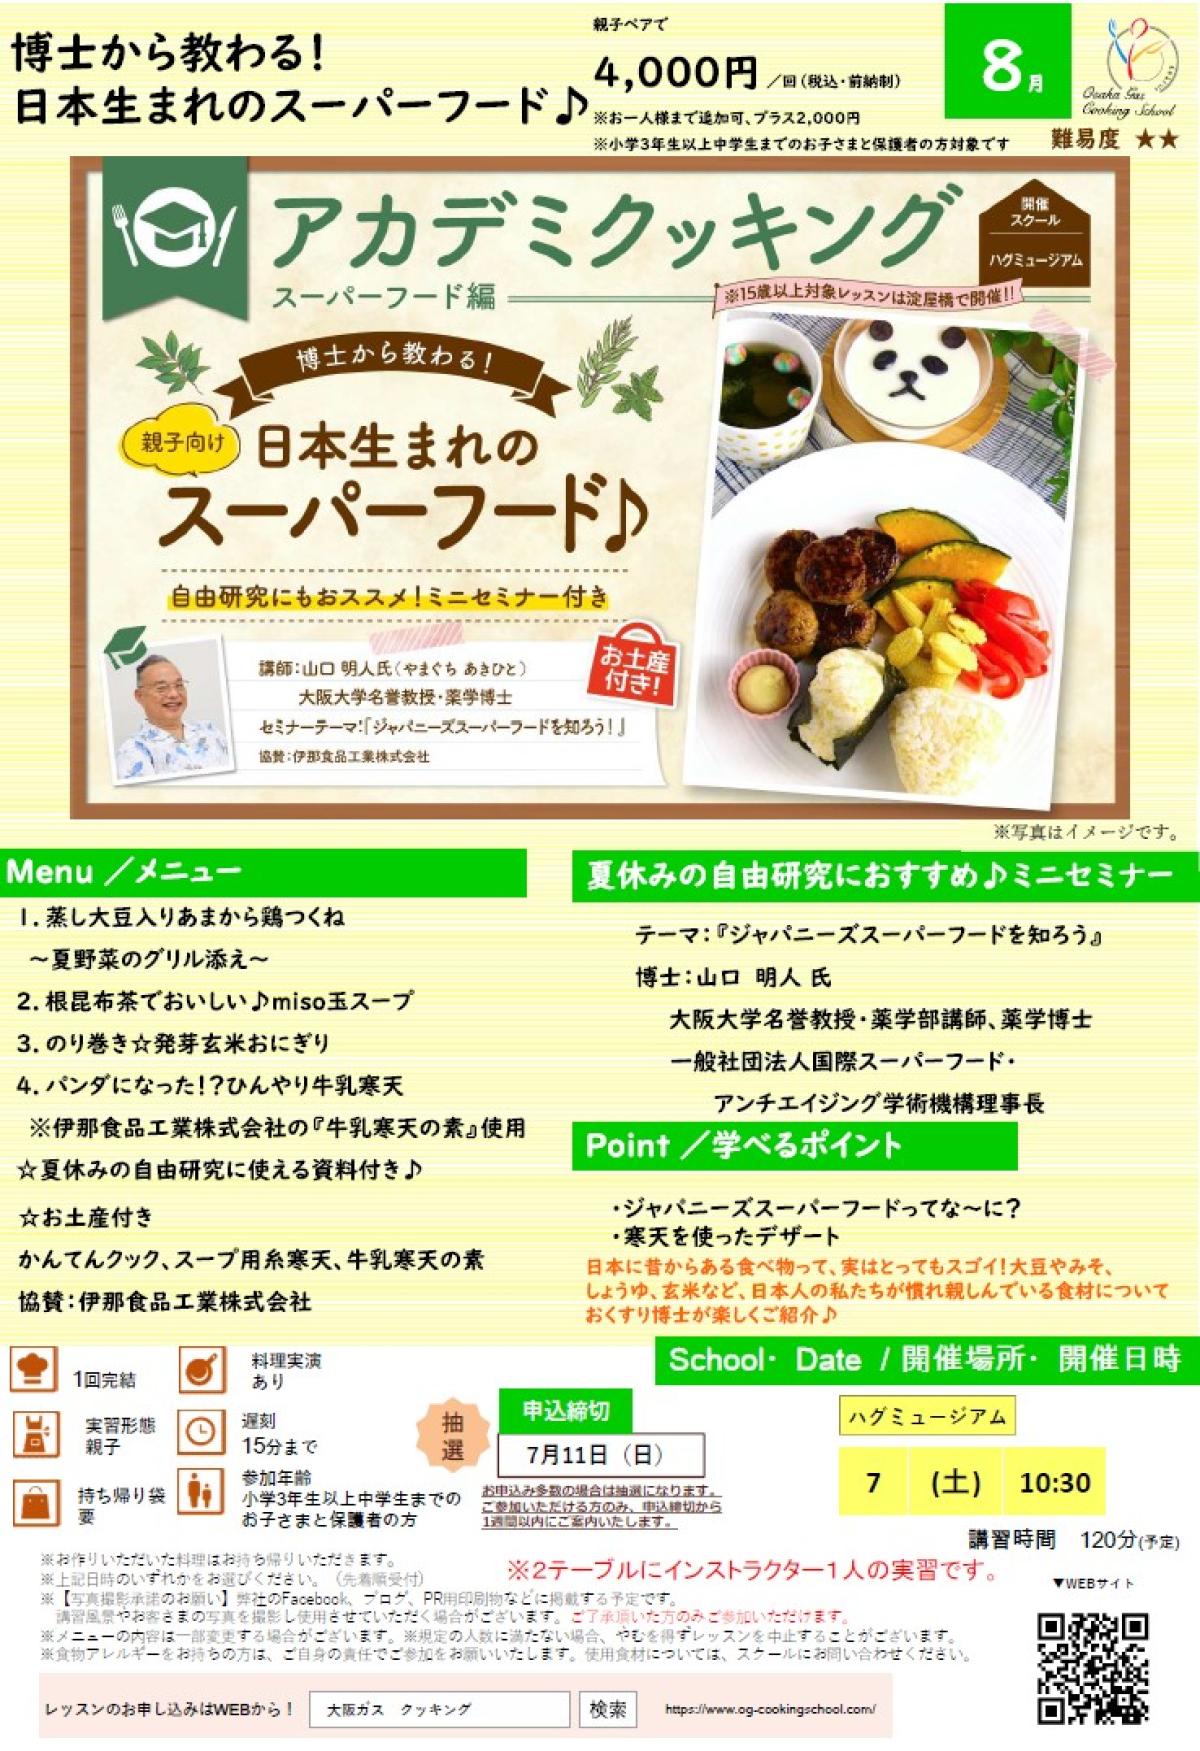 食の資格“栄養 コンシェルジュ”が導入された大阪ガス クッキングスクールが、8月度アカデミクッキング ～ジャパニーズスーパーフード～を開催します